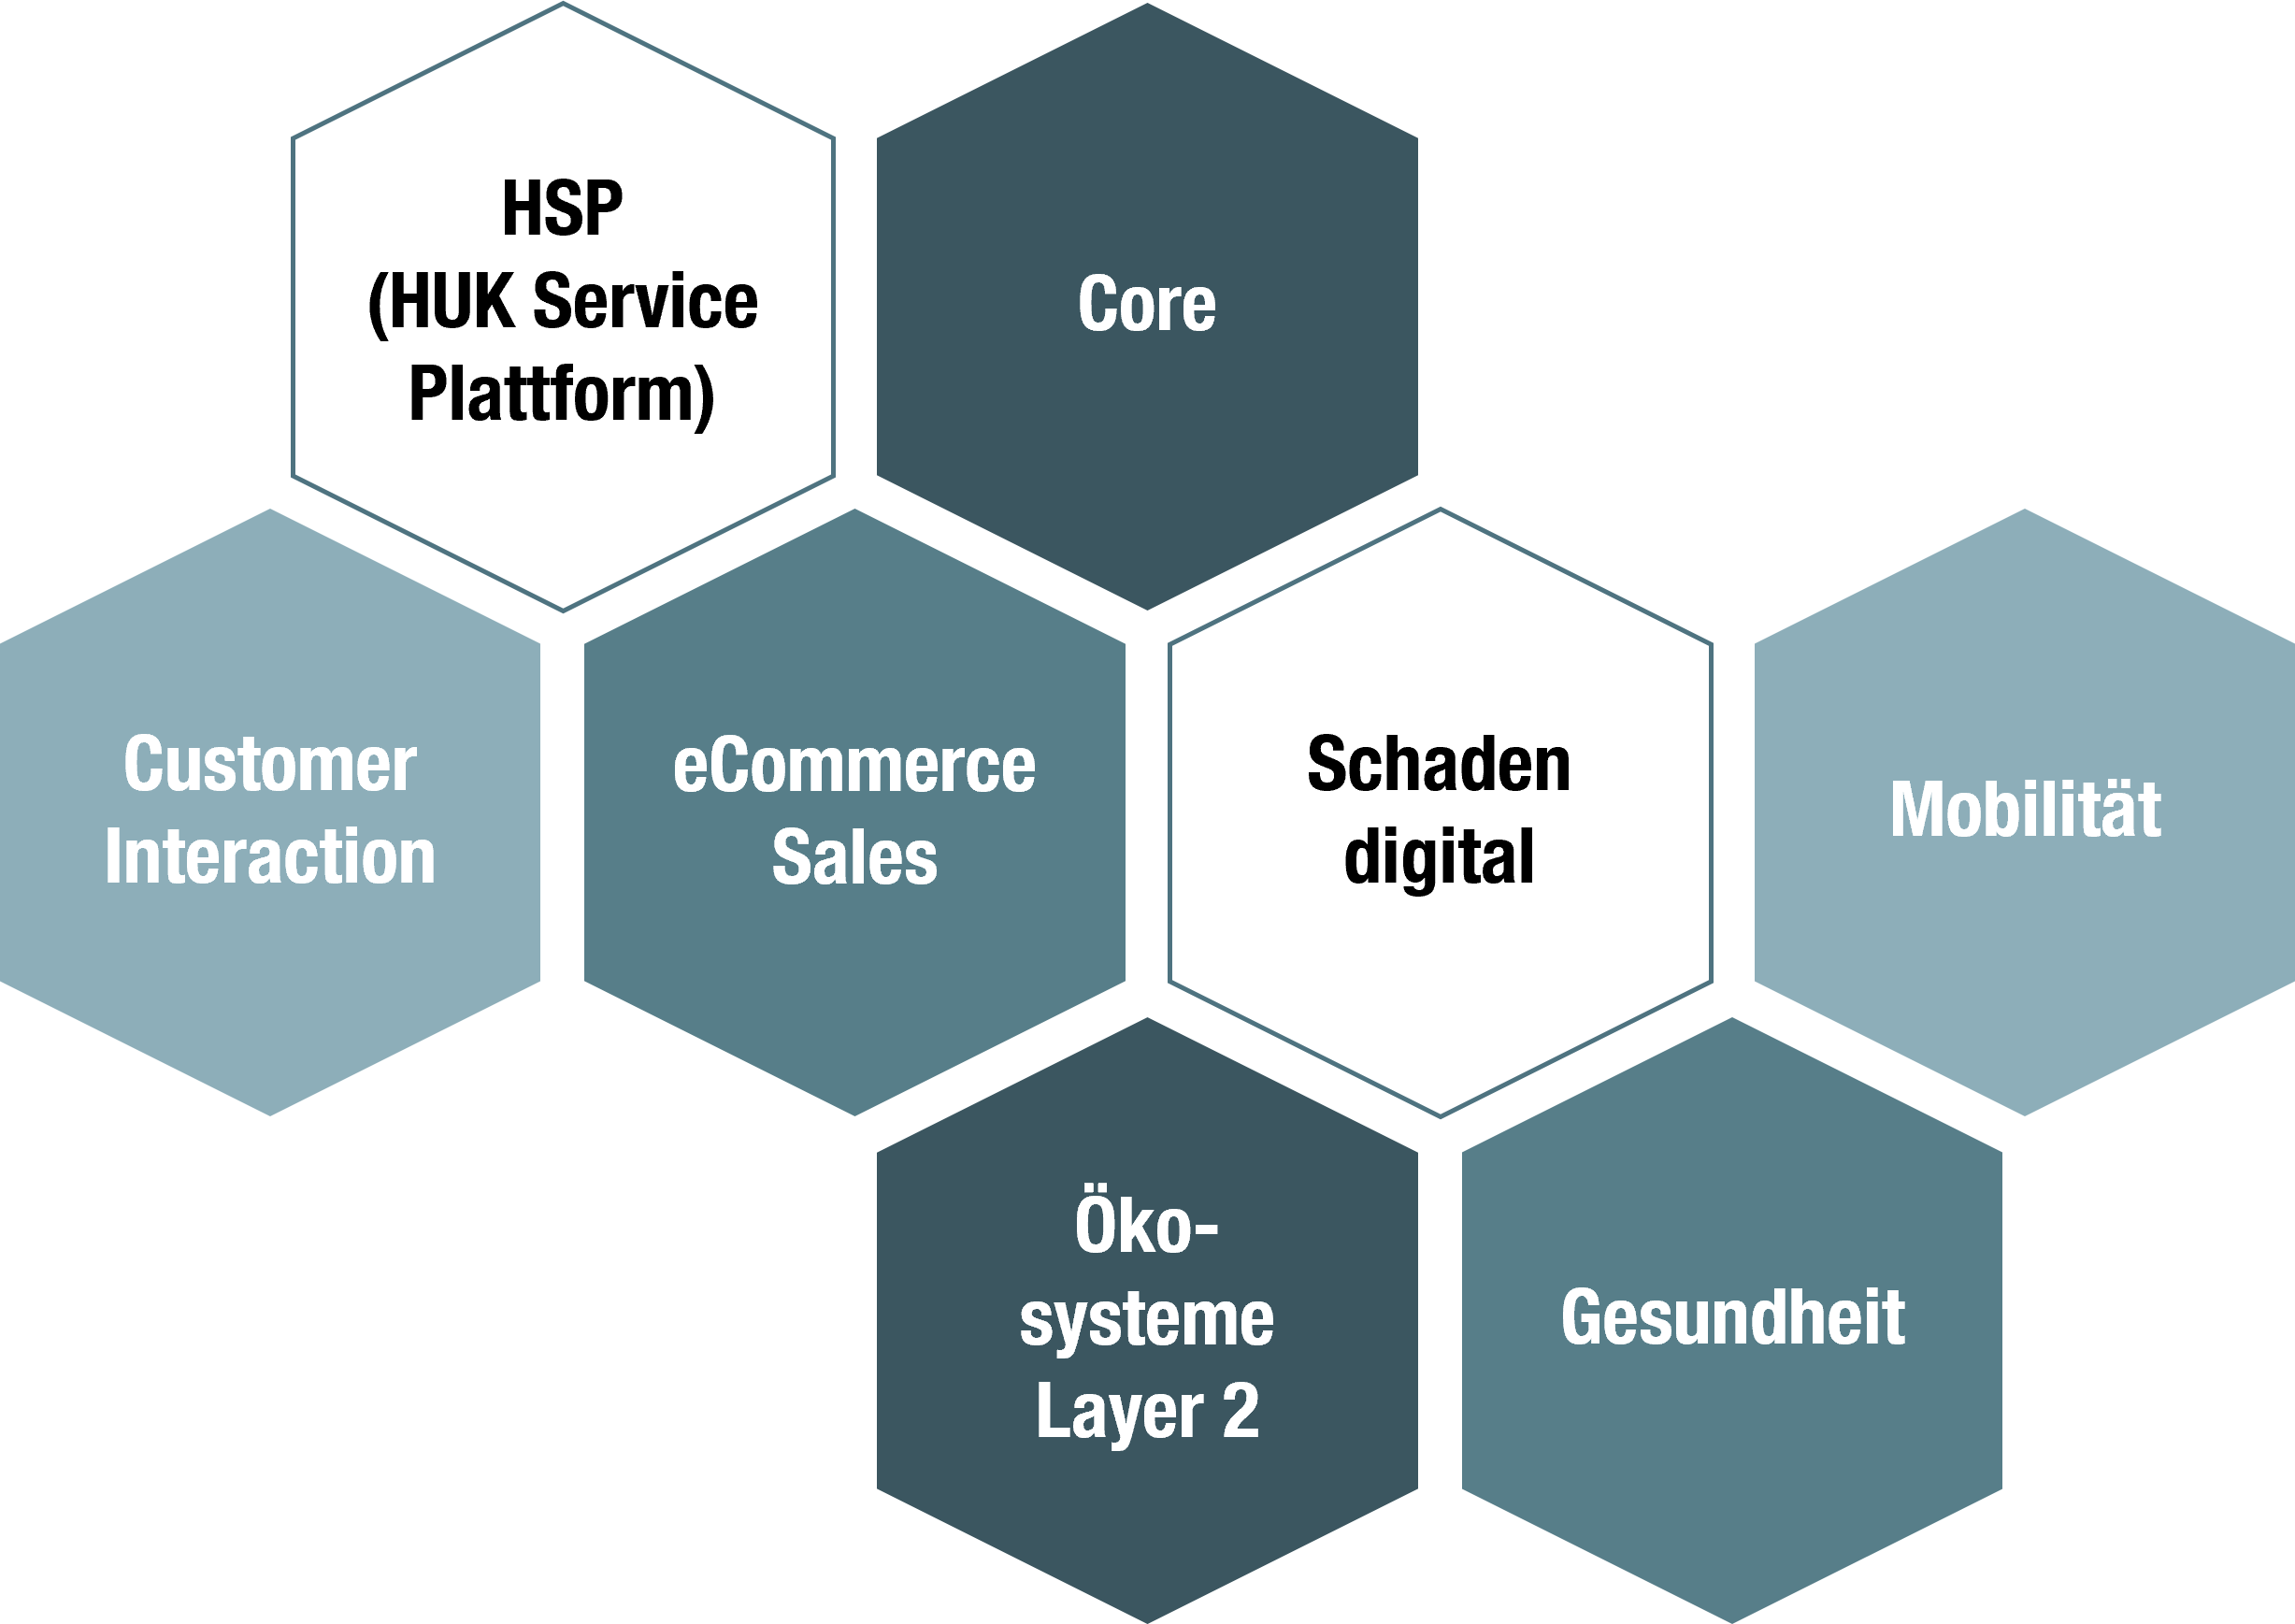 Die 8 Services der Abteilung: Omnichannel Core, technische Service Plattform, eCommerce Sales, eCommerce Interaction, Schaden digital, Gesundheit, Mobilität